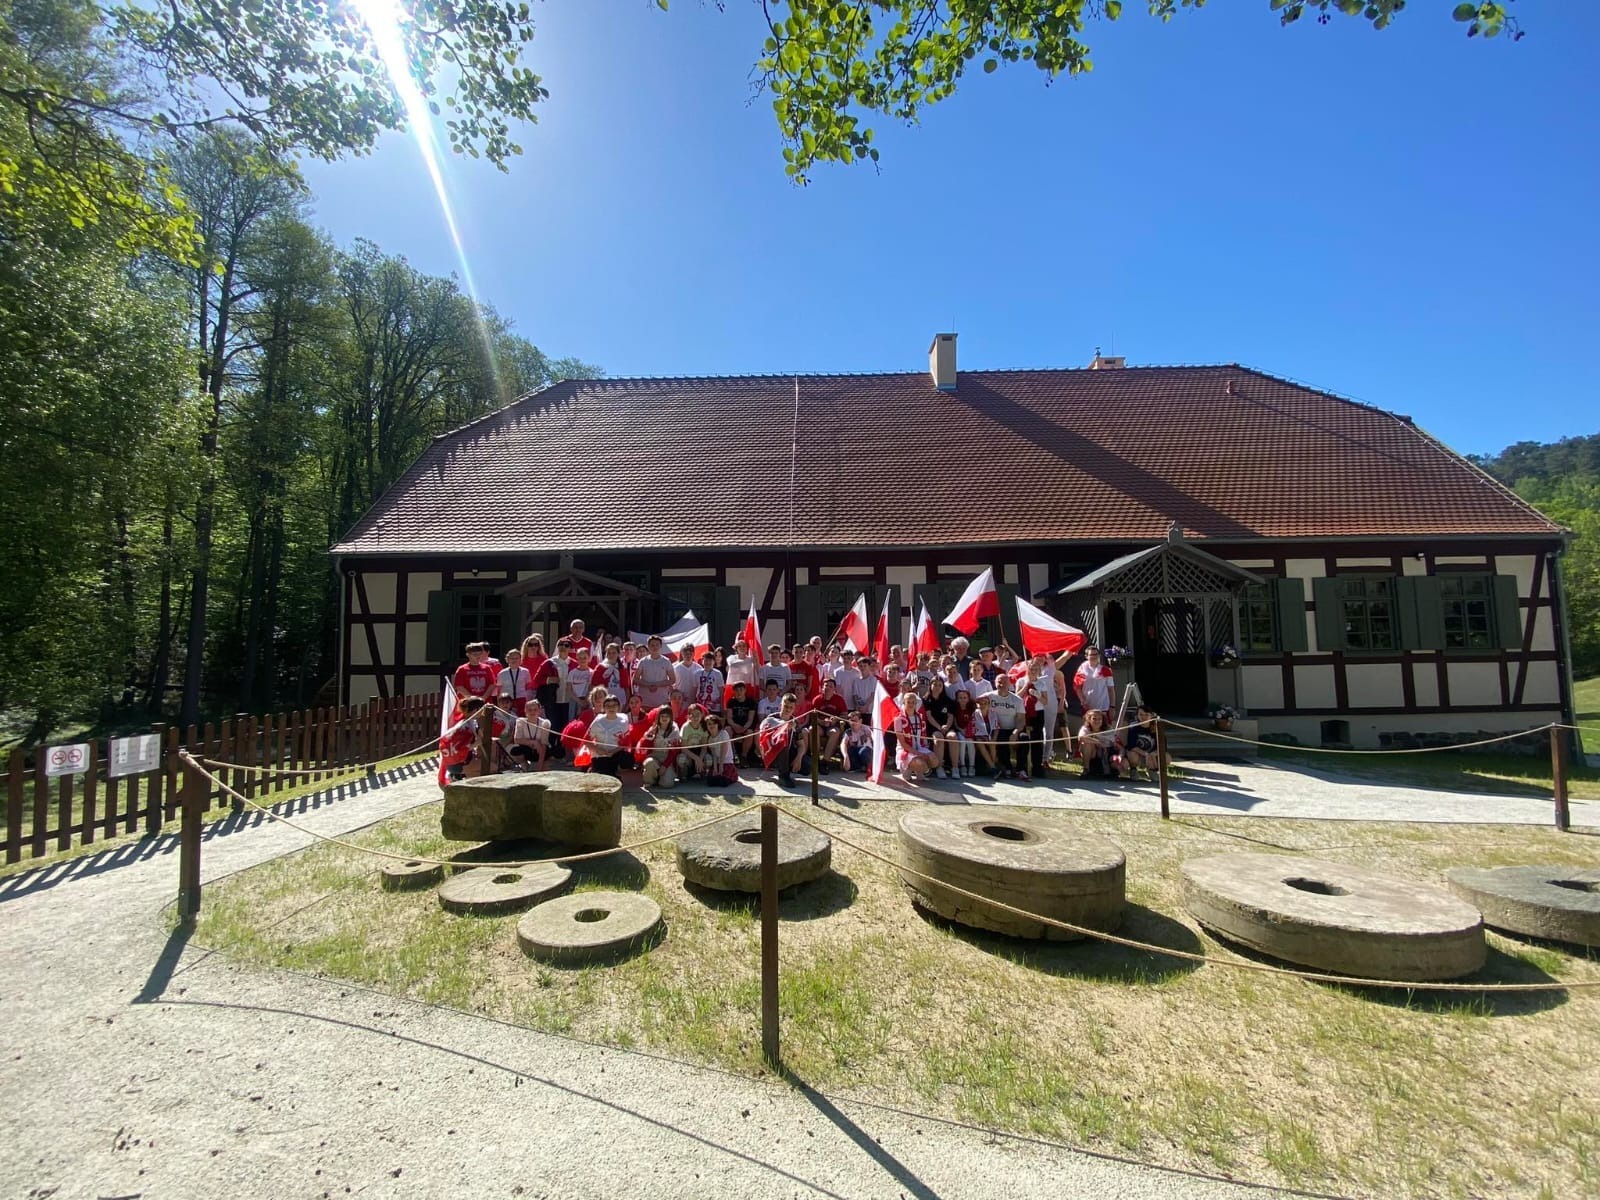 Uczniowie w biało czerwonych strojach z flagami polski pozują przed budynkiem młyna do zdjęcia.